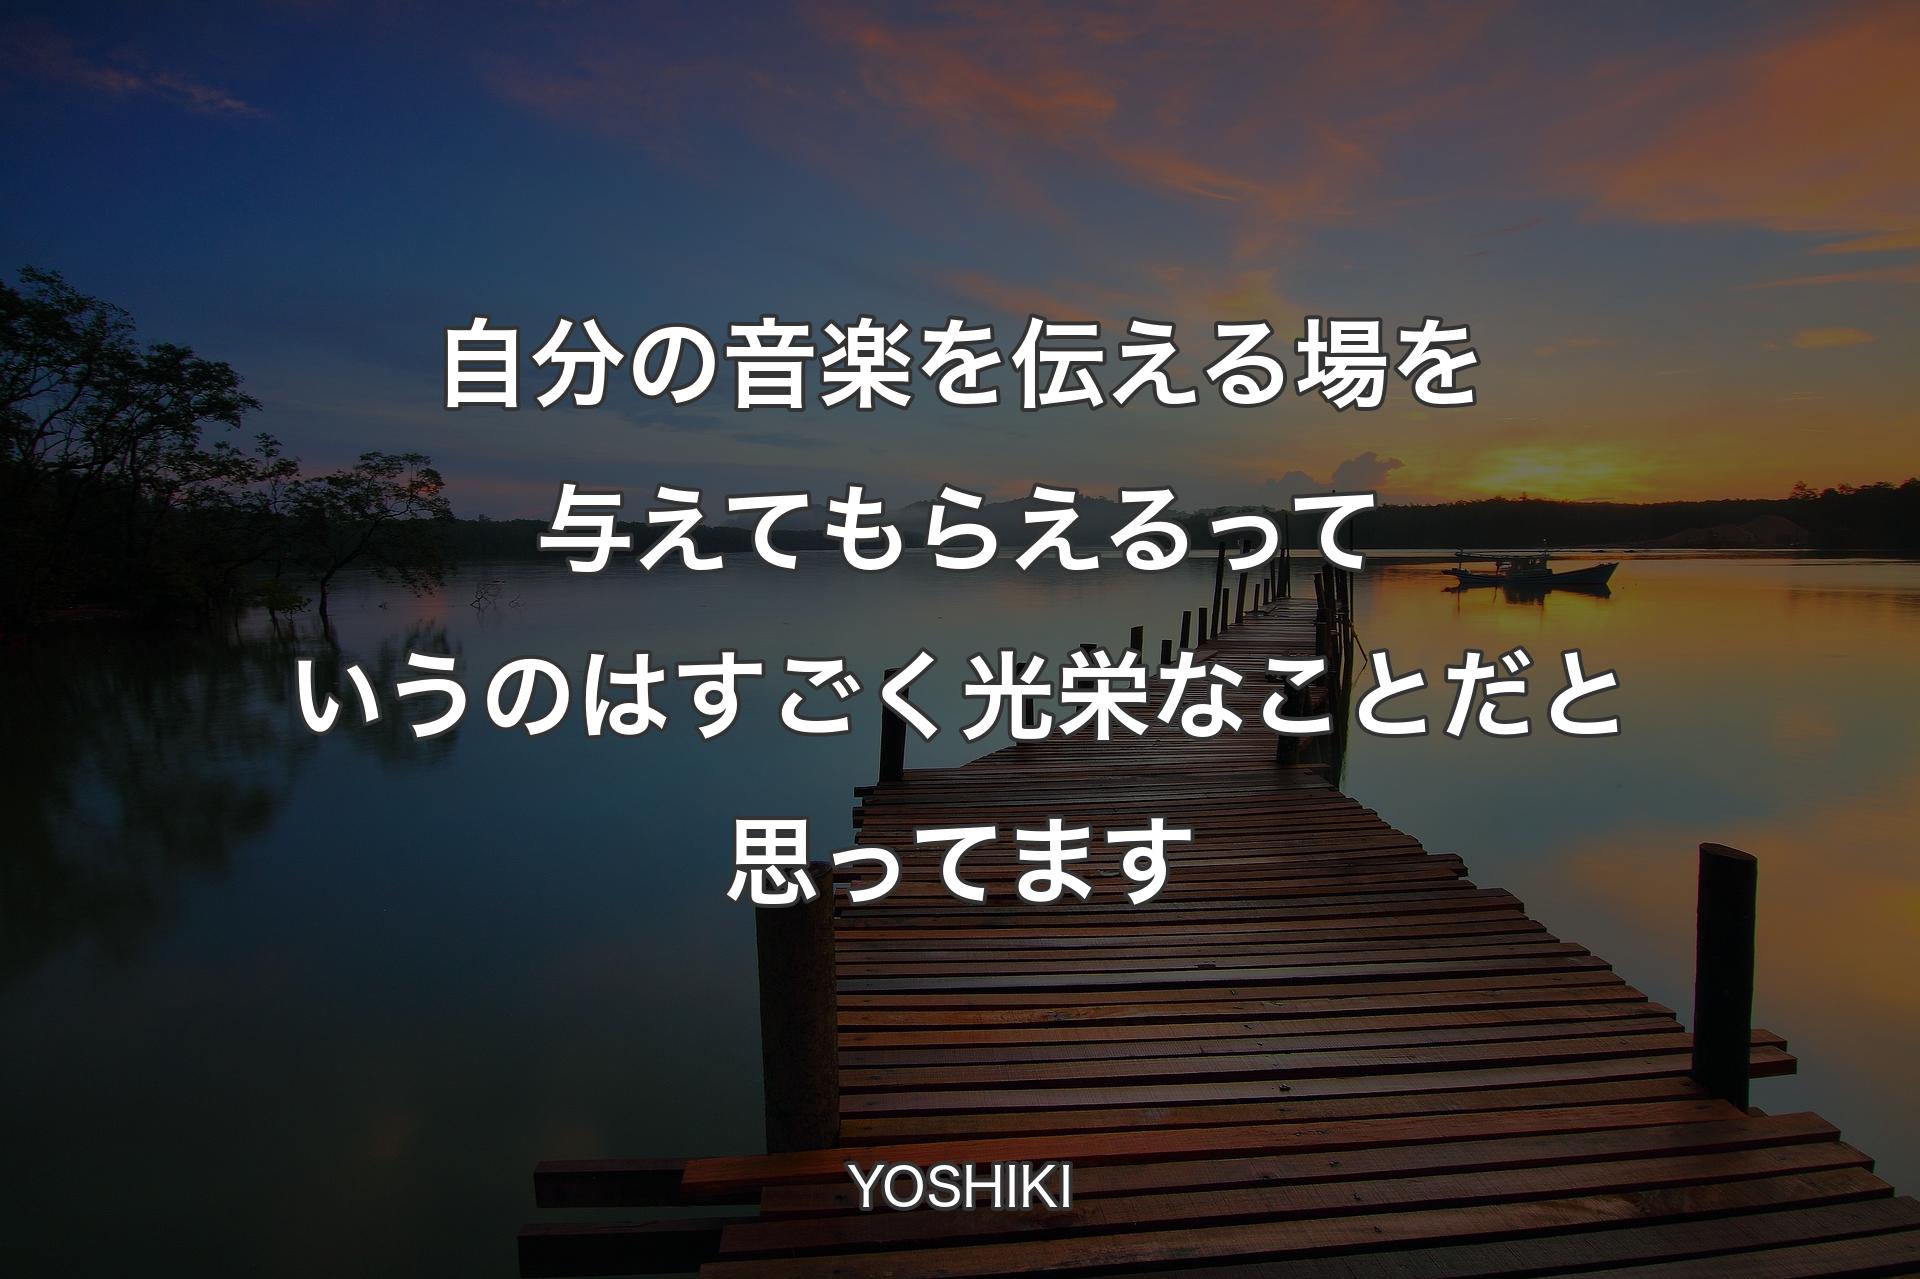 【背景3】自分の音楽を伝える場を与えてもらえるっていうのはすごく光栄なことだと思ってます - YOSHIKI